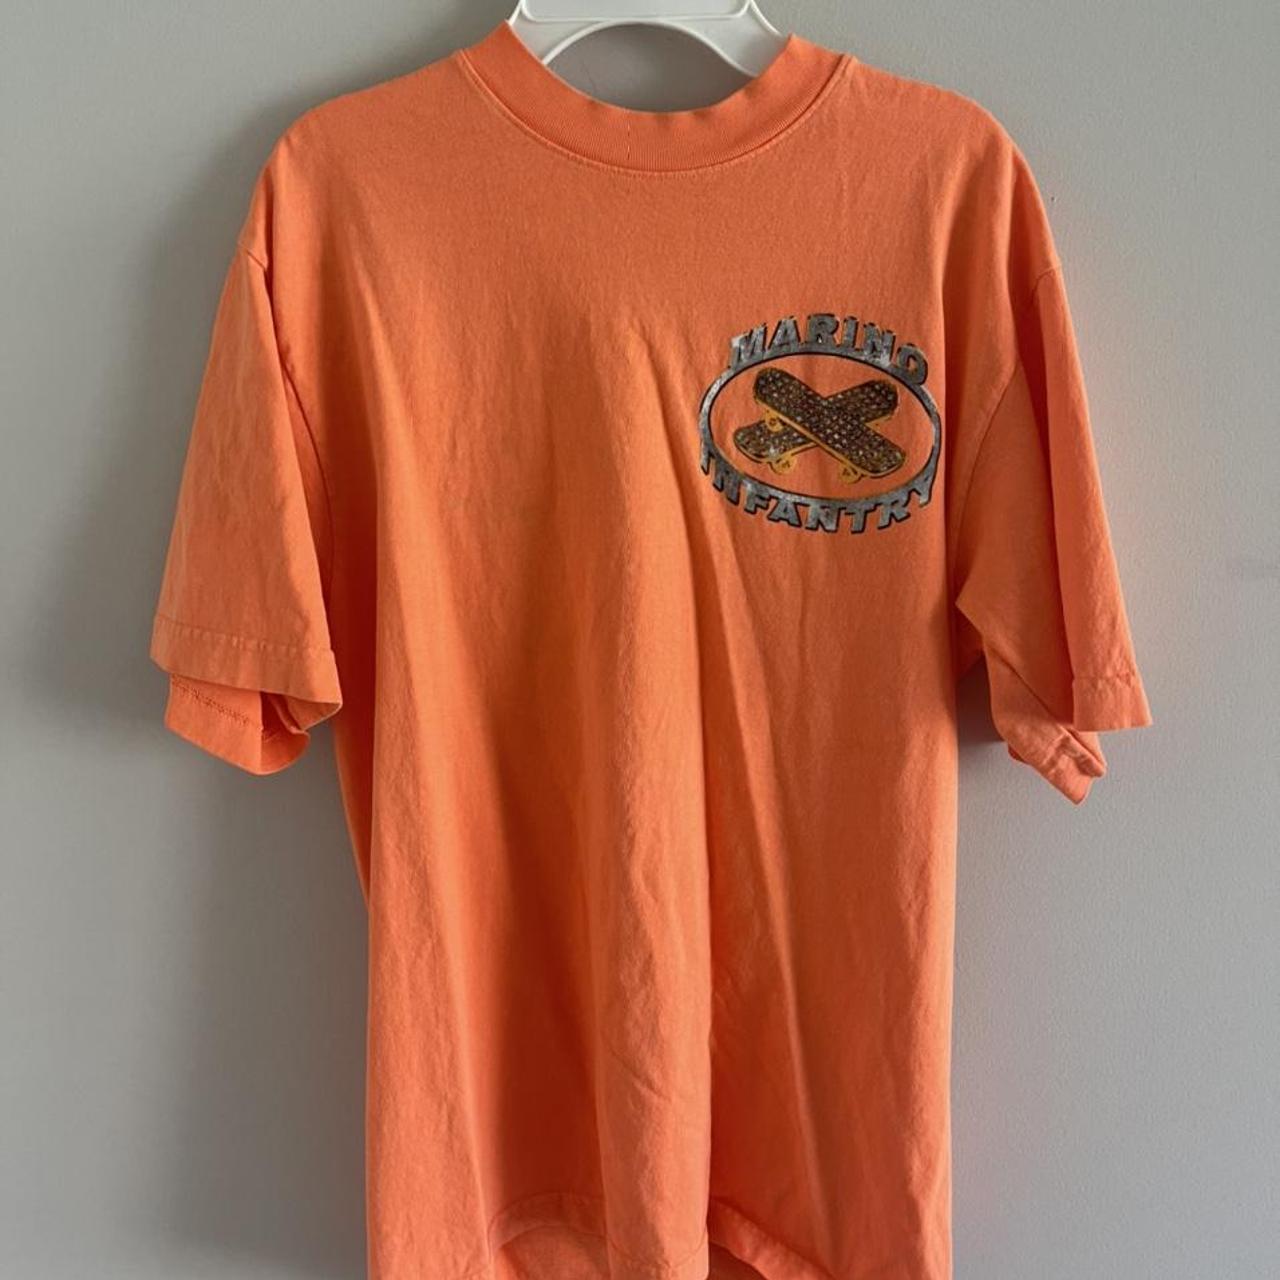 Product Image 2 - Neon orange Marino infantry shirt